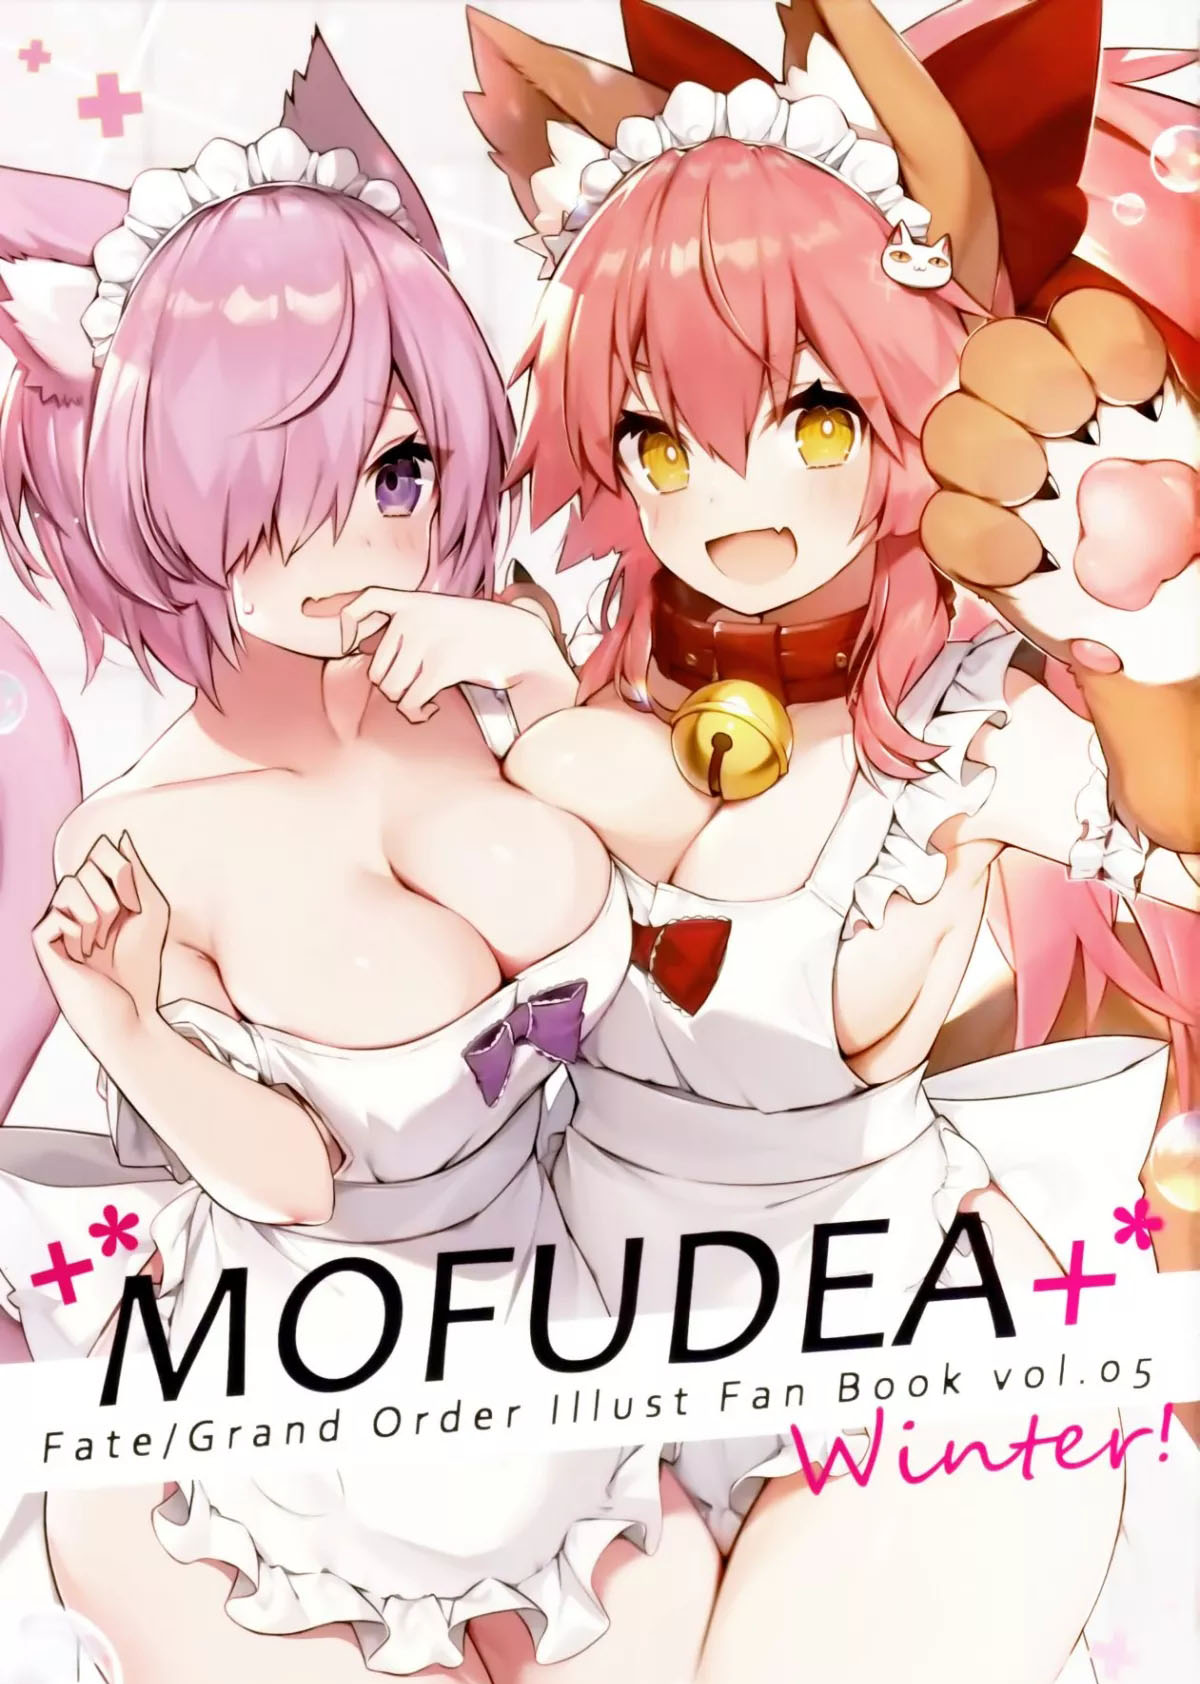 Mofudea+ - 短篇 - 1